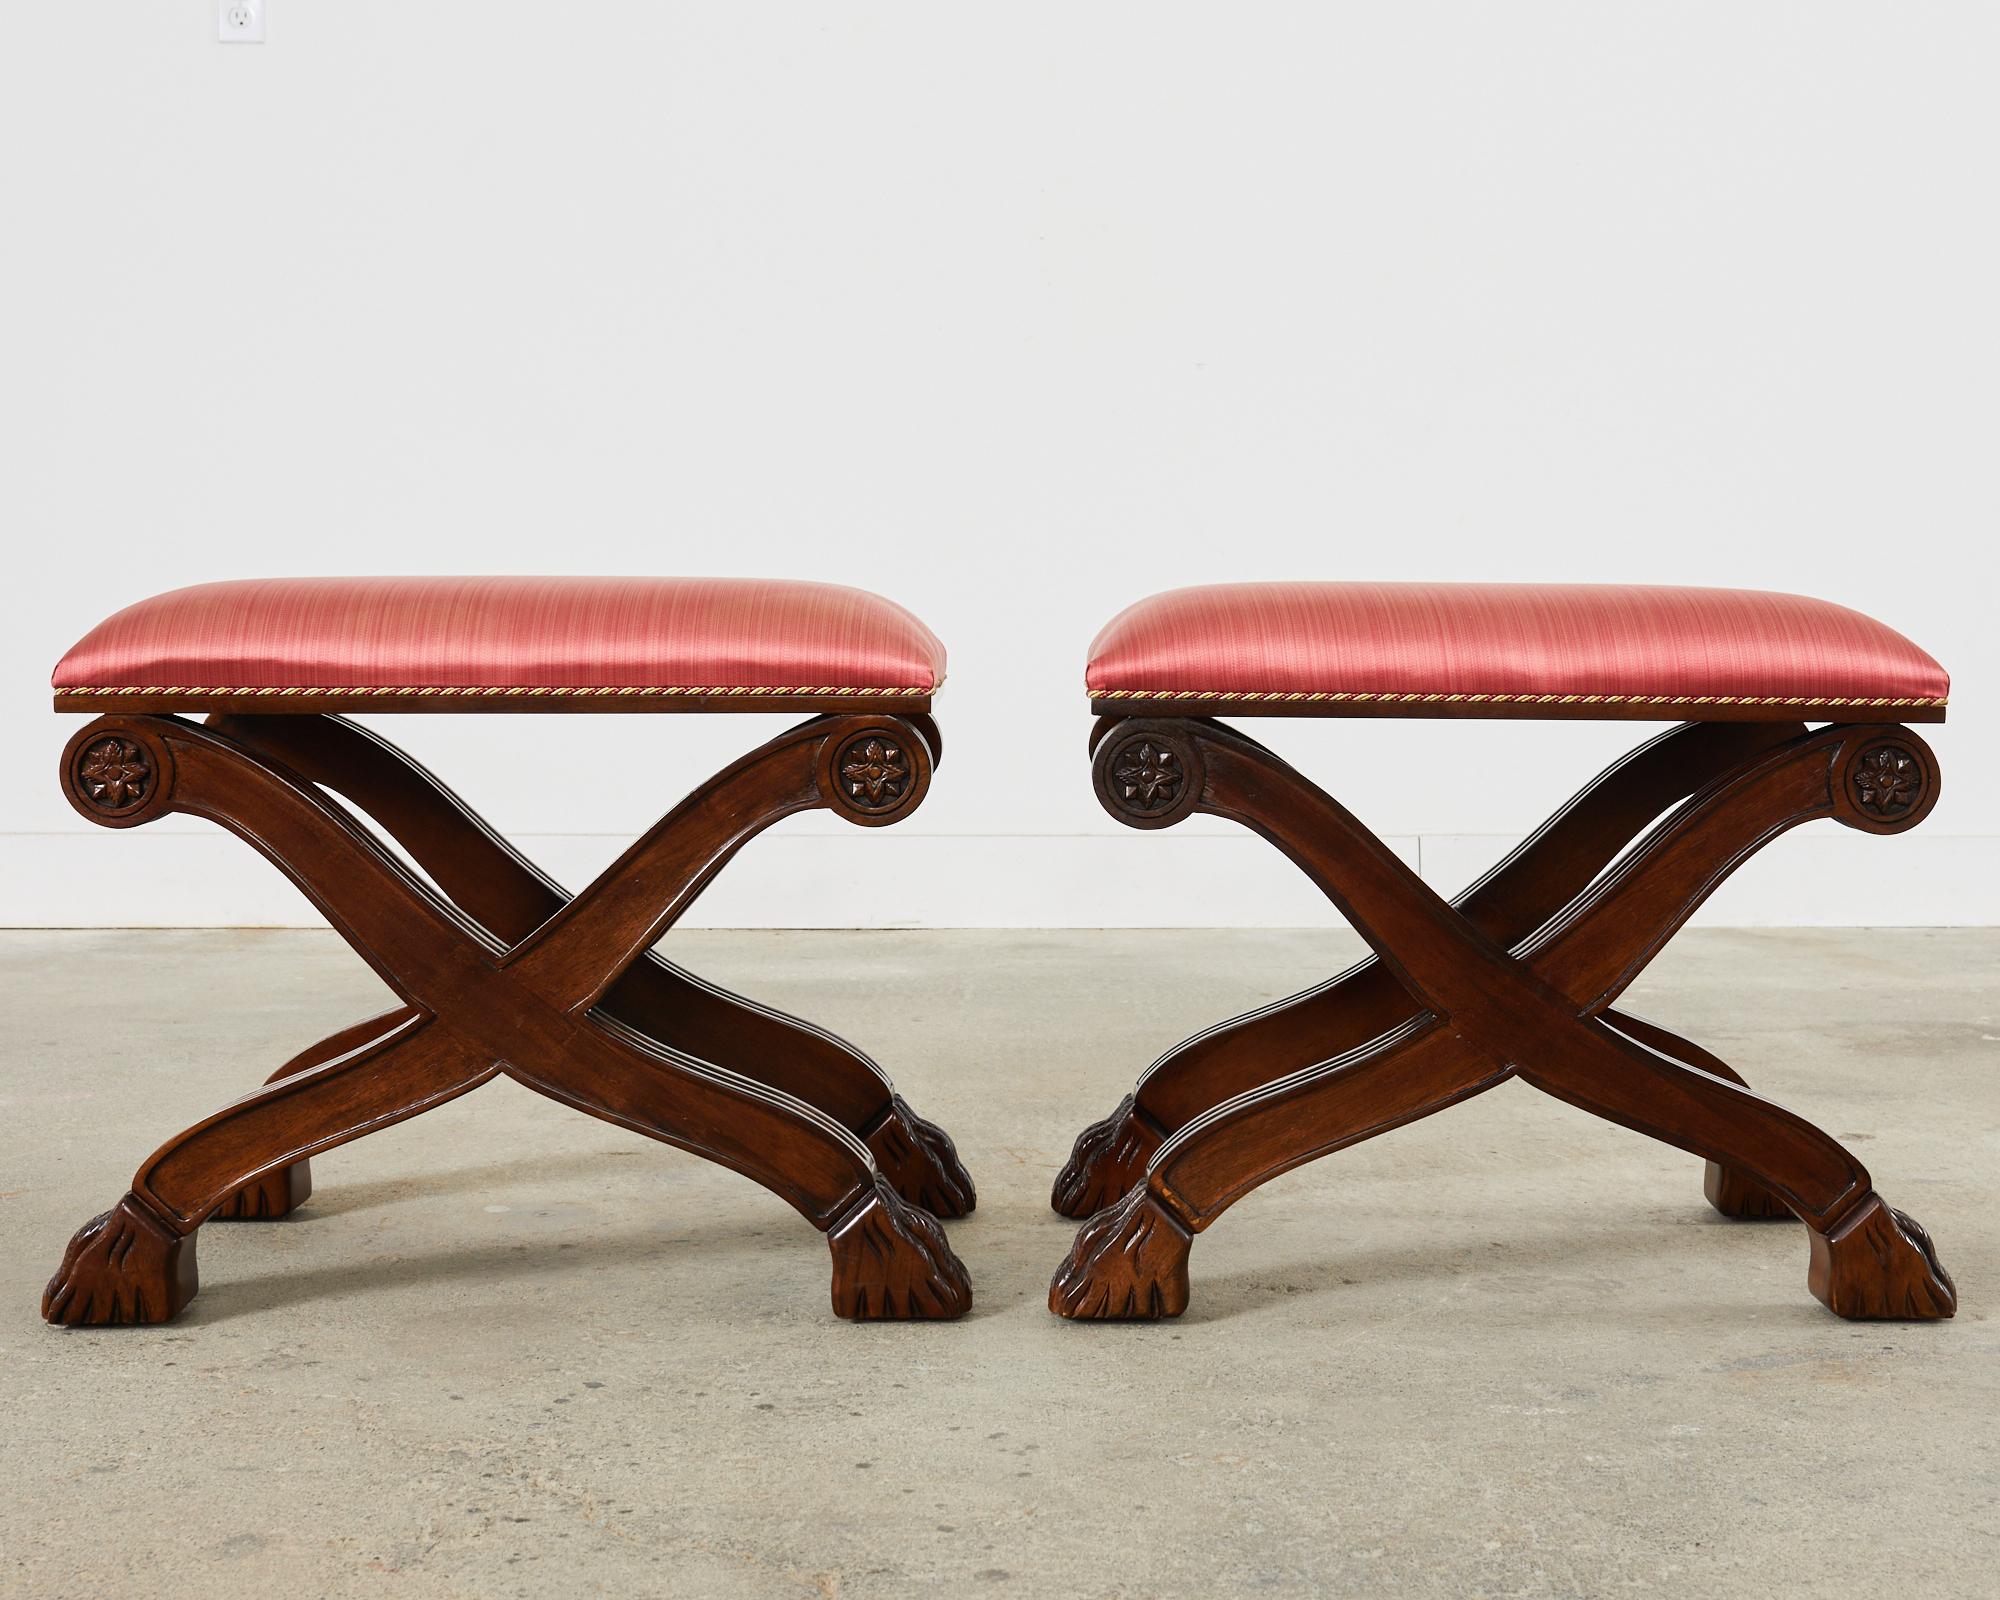 Dramatisches Paar x-förmiger Curule-Bänke oder -Hocker im neoklassischen Stil von Century Furniture. Die Hocker bestehen aus einem reichhaltigen Nussbaumrahmen mit geriffelten Beinen, die oben mit geschnitzten Rosetten versehen sind und mit